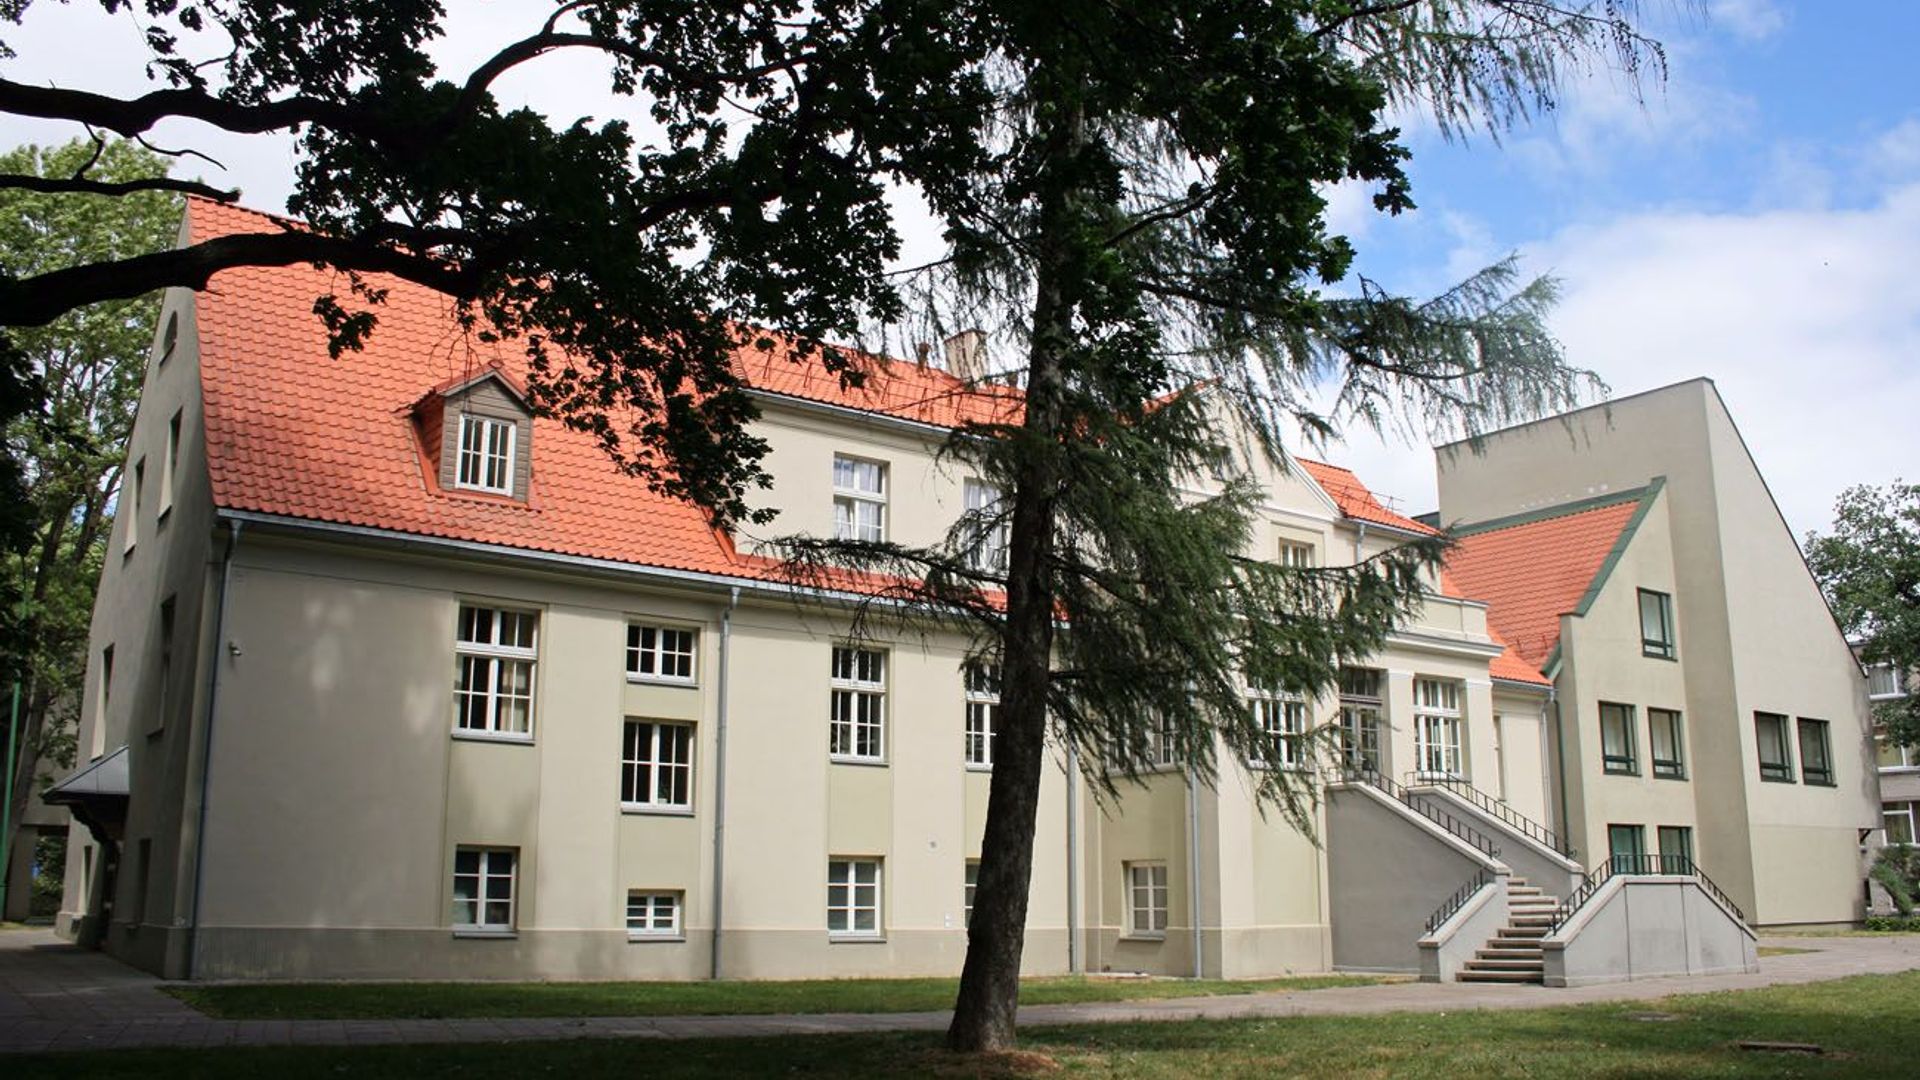 Former Rumpiškė Manor